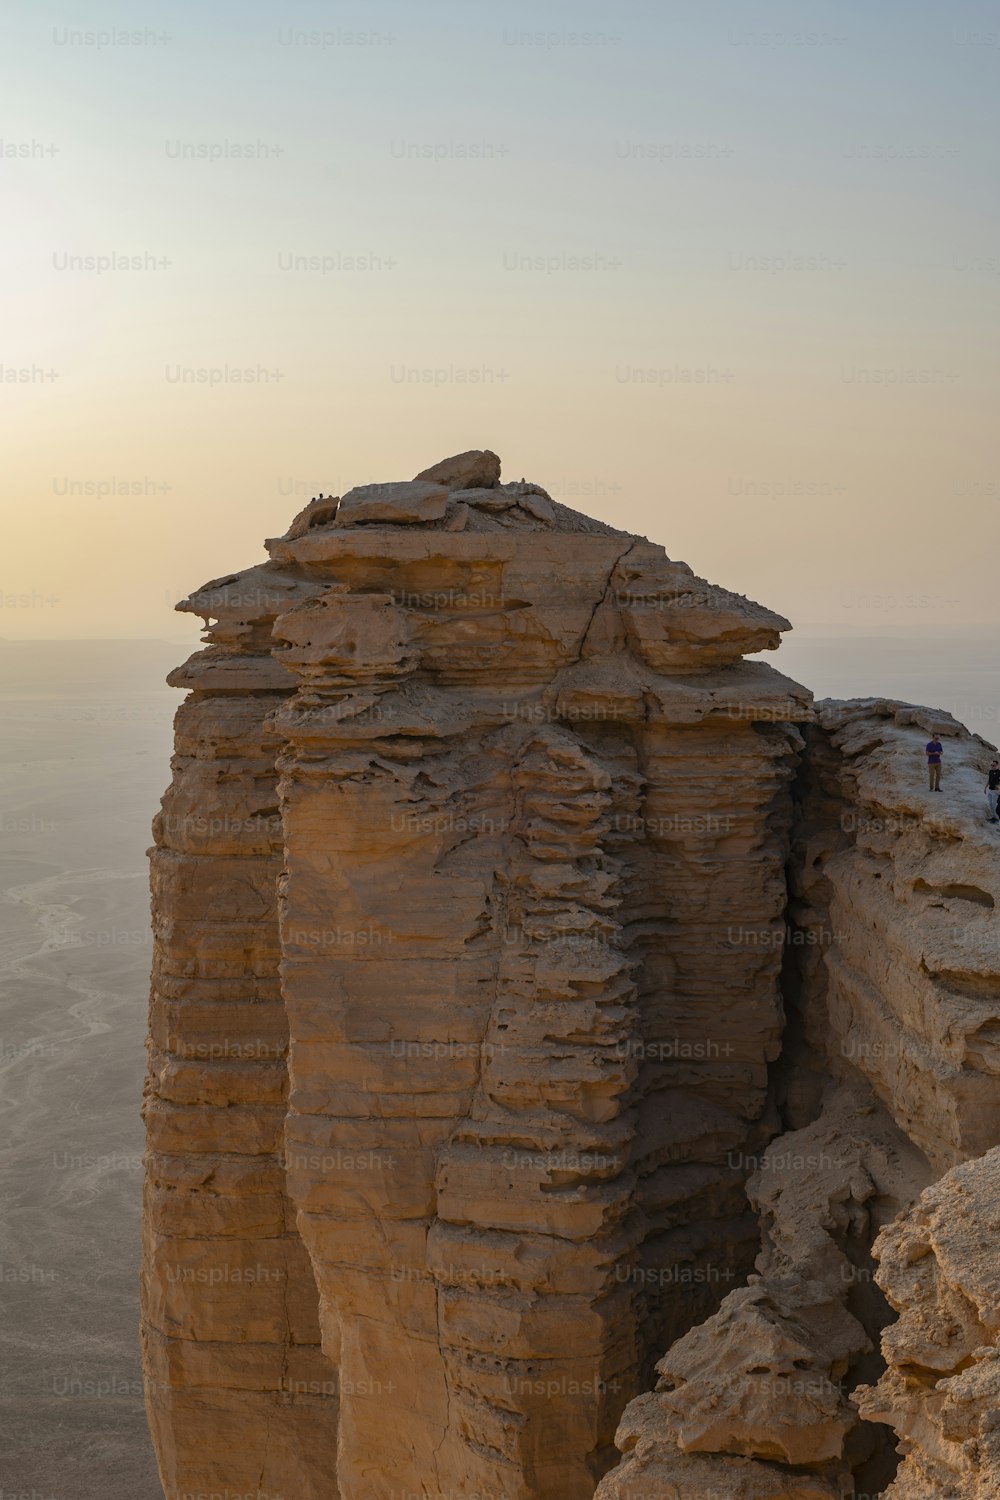 Riyad, le 13 novembre 2020. Le bord du monde (Jebel Fihrayn) est une merveille géologique spectaculaire dans le désert rocheux au nord-ouest de Riyad, en Arabie saoudite.